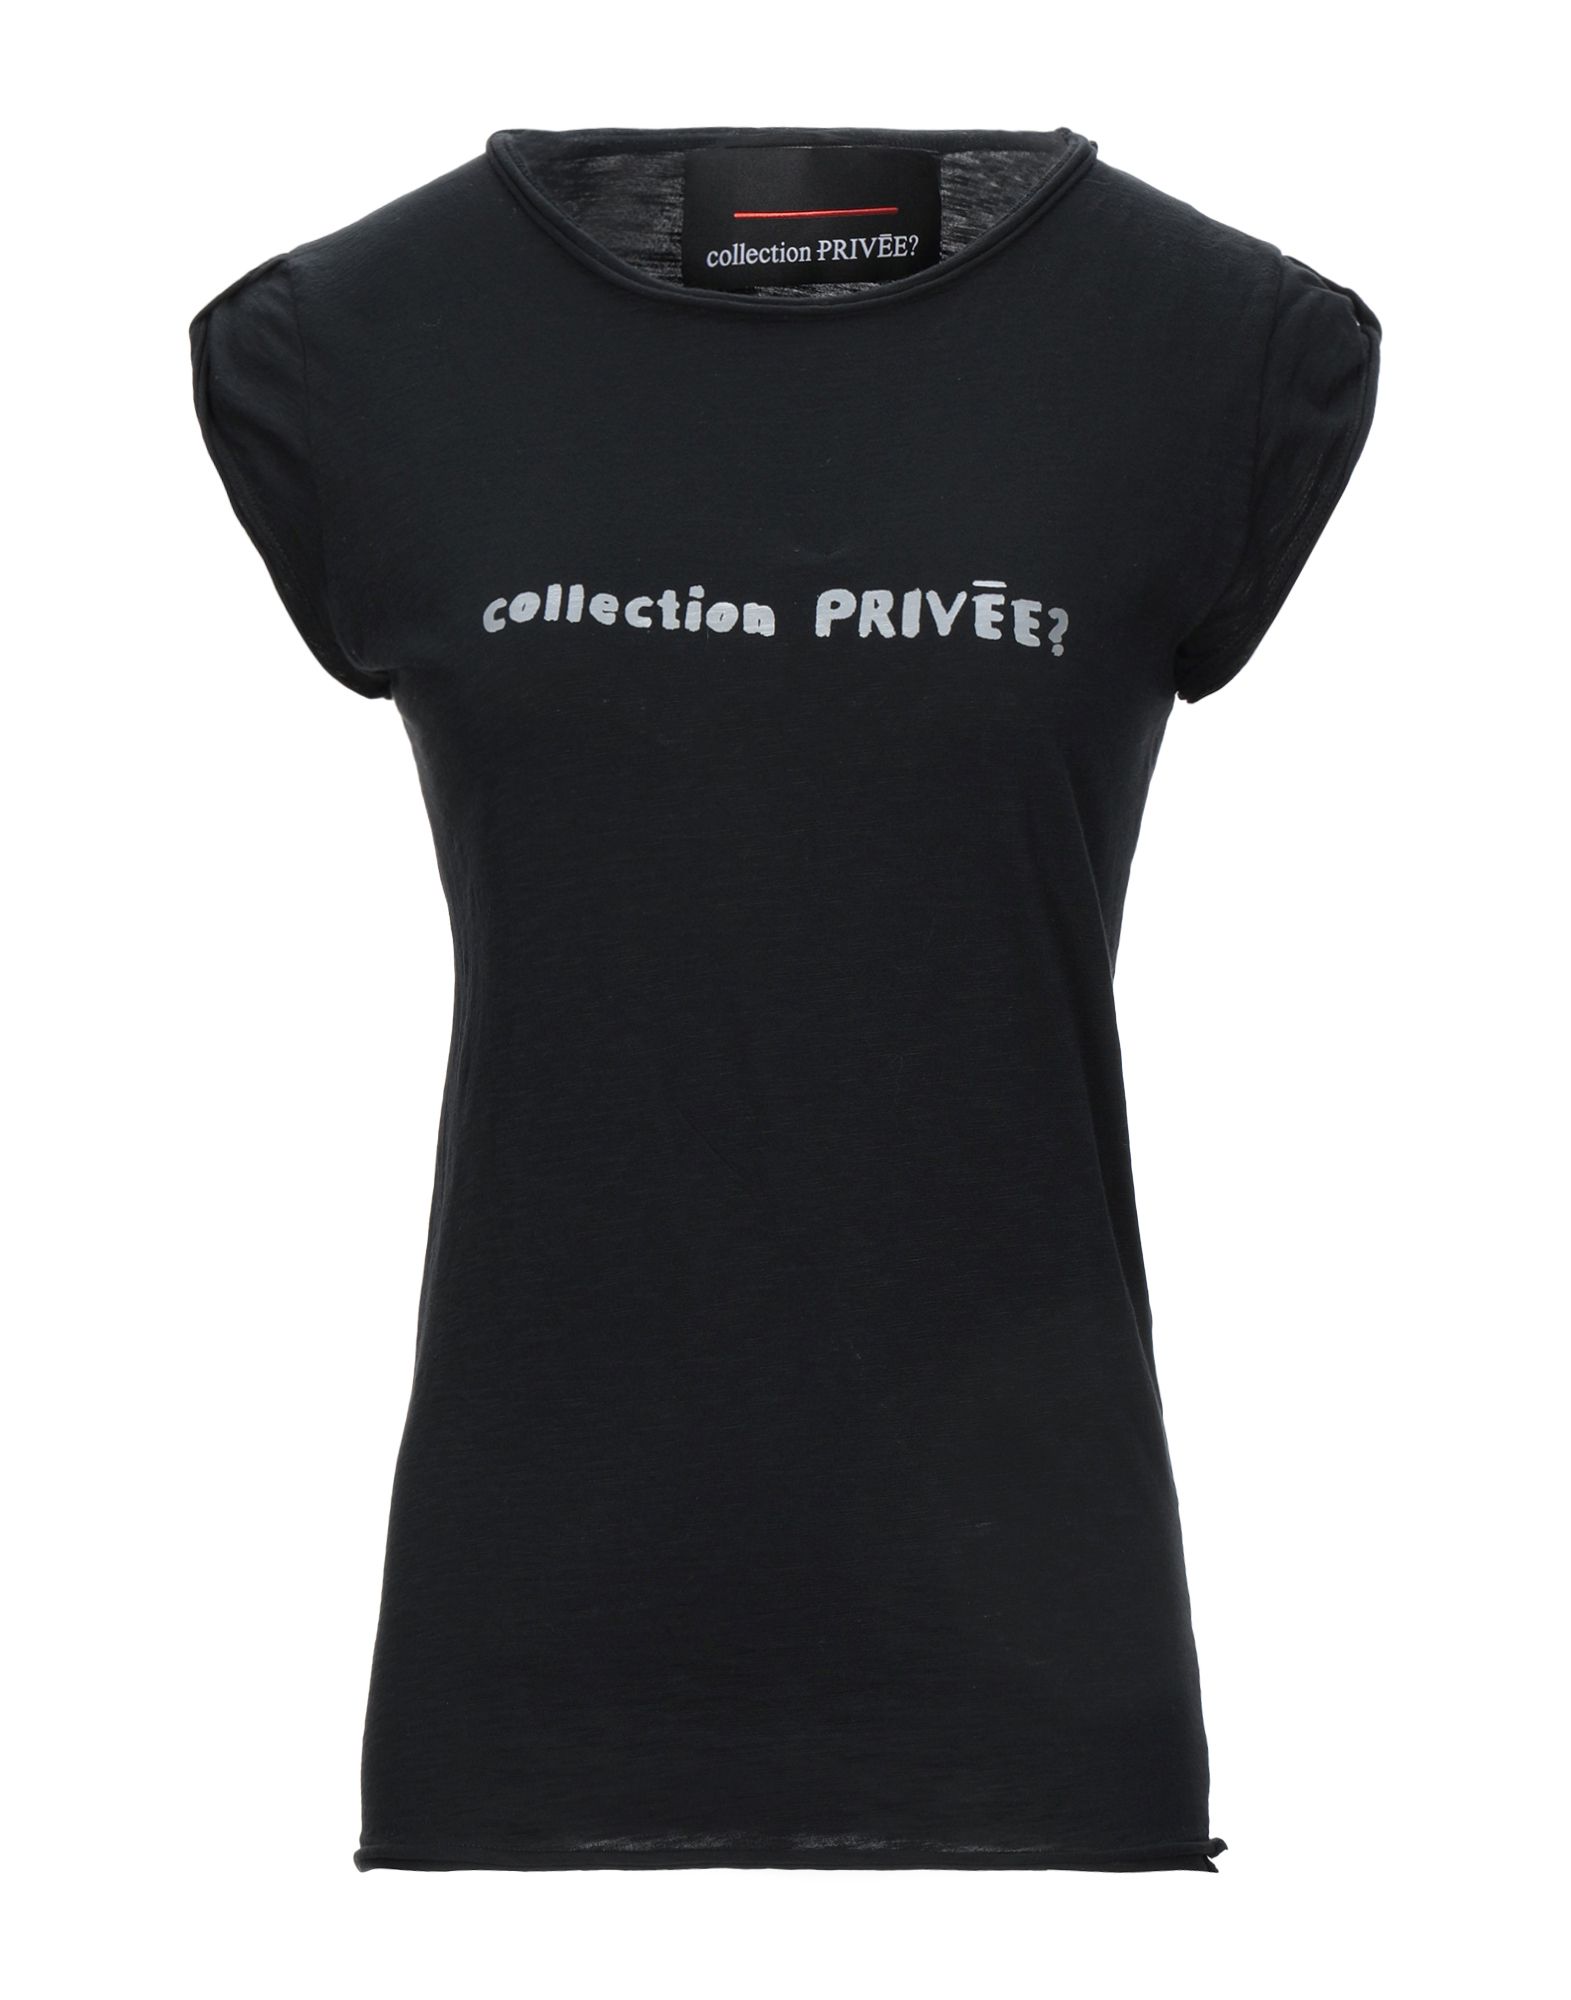 Футболка collection 98. Nika collection футболки. OSTIN Casual Basic collection футболка женская черная. Футболка collection